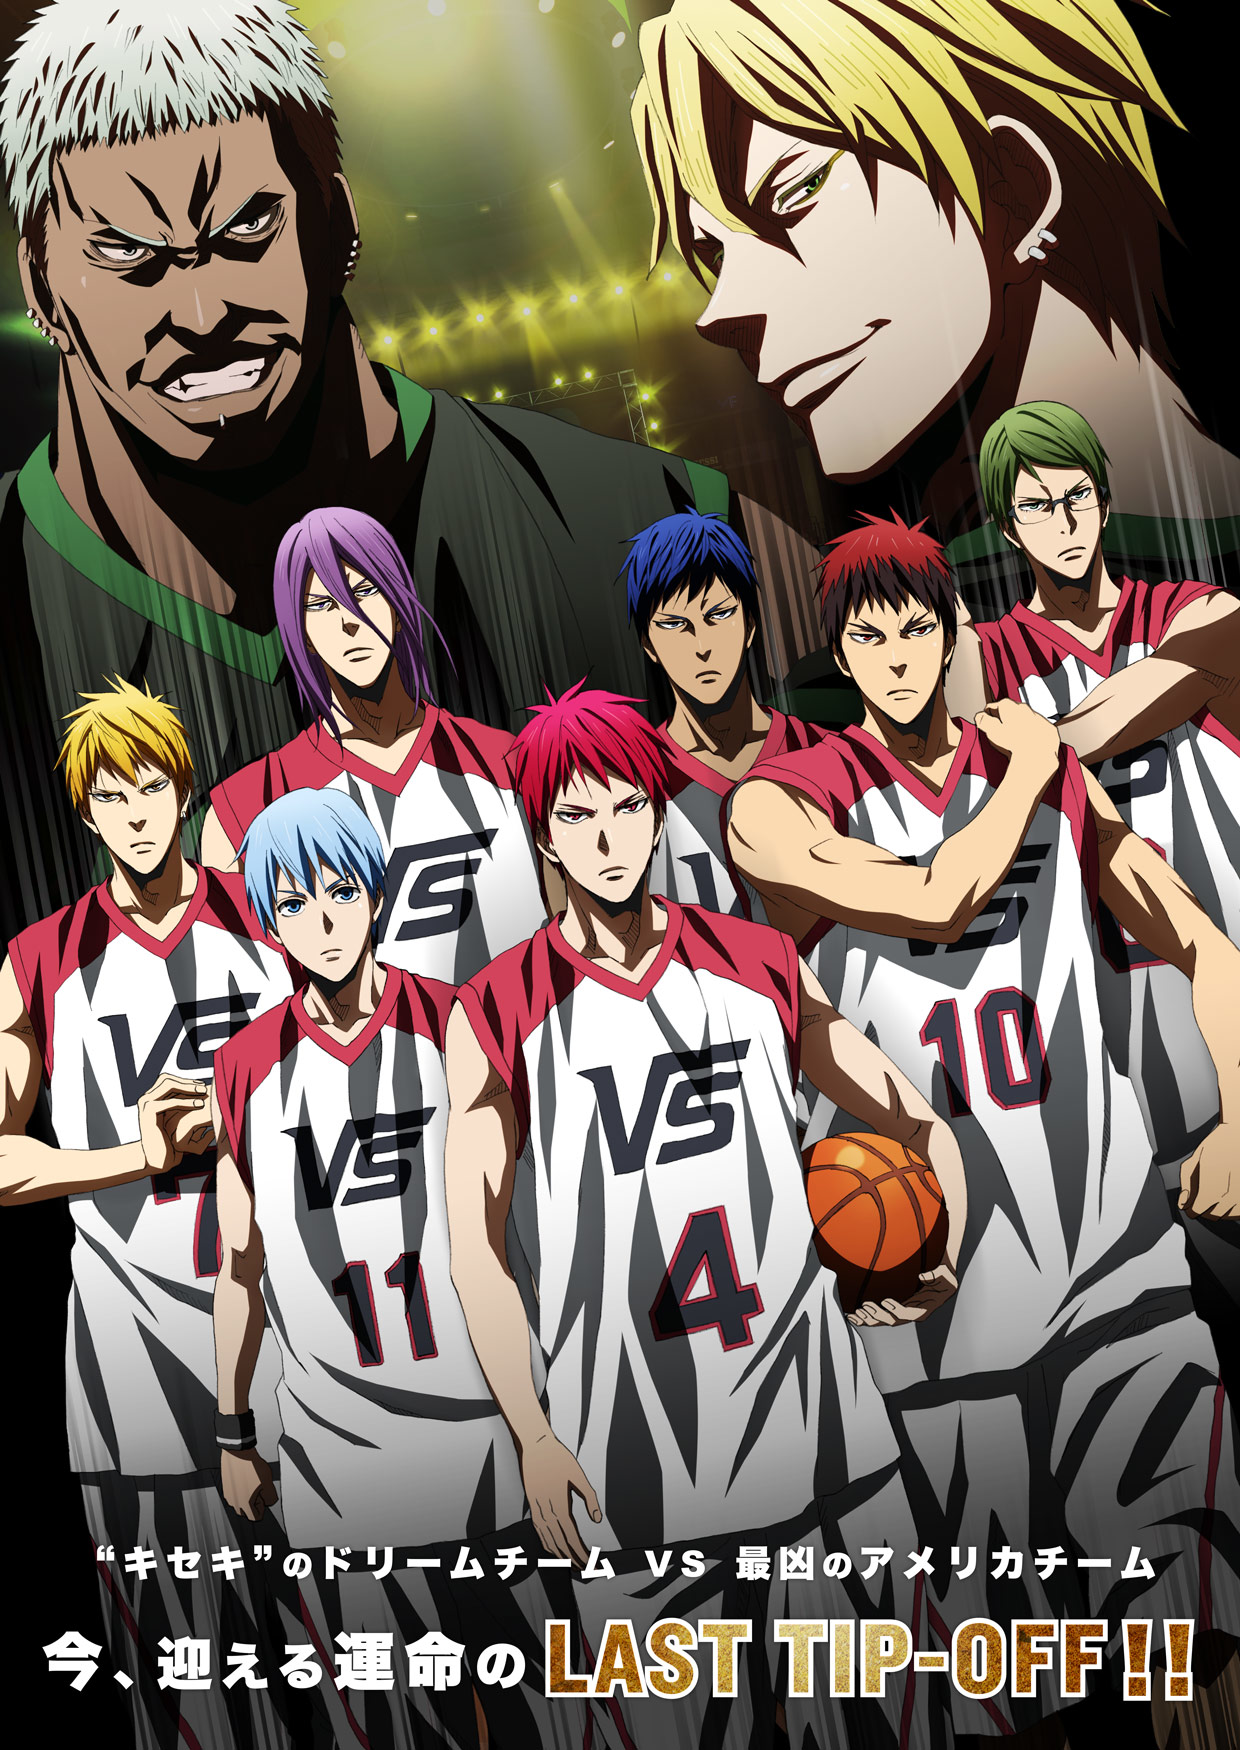 kuroko no basket manga sequel